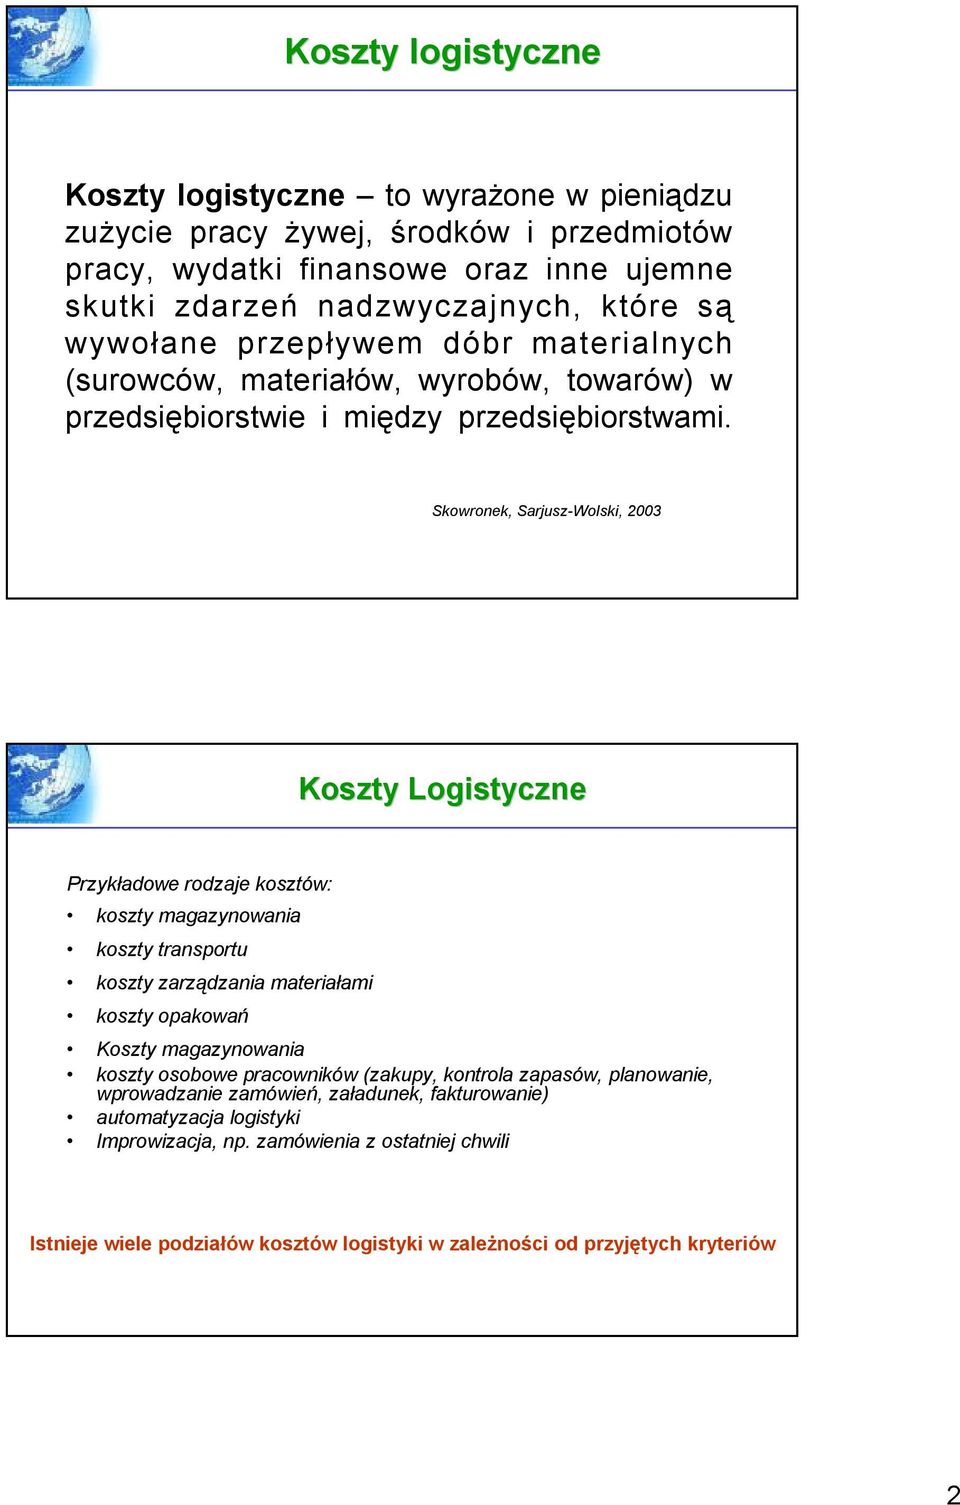 Skowronek, Sarjusz-Wolski, 2003 Koszty Logistyczne Przykładowe rodzaje kosztów: koszty magazynowania koszty transportu koszty zarządzania materiałami koszty opakowań Koszty magazynowania